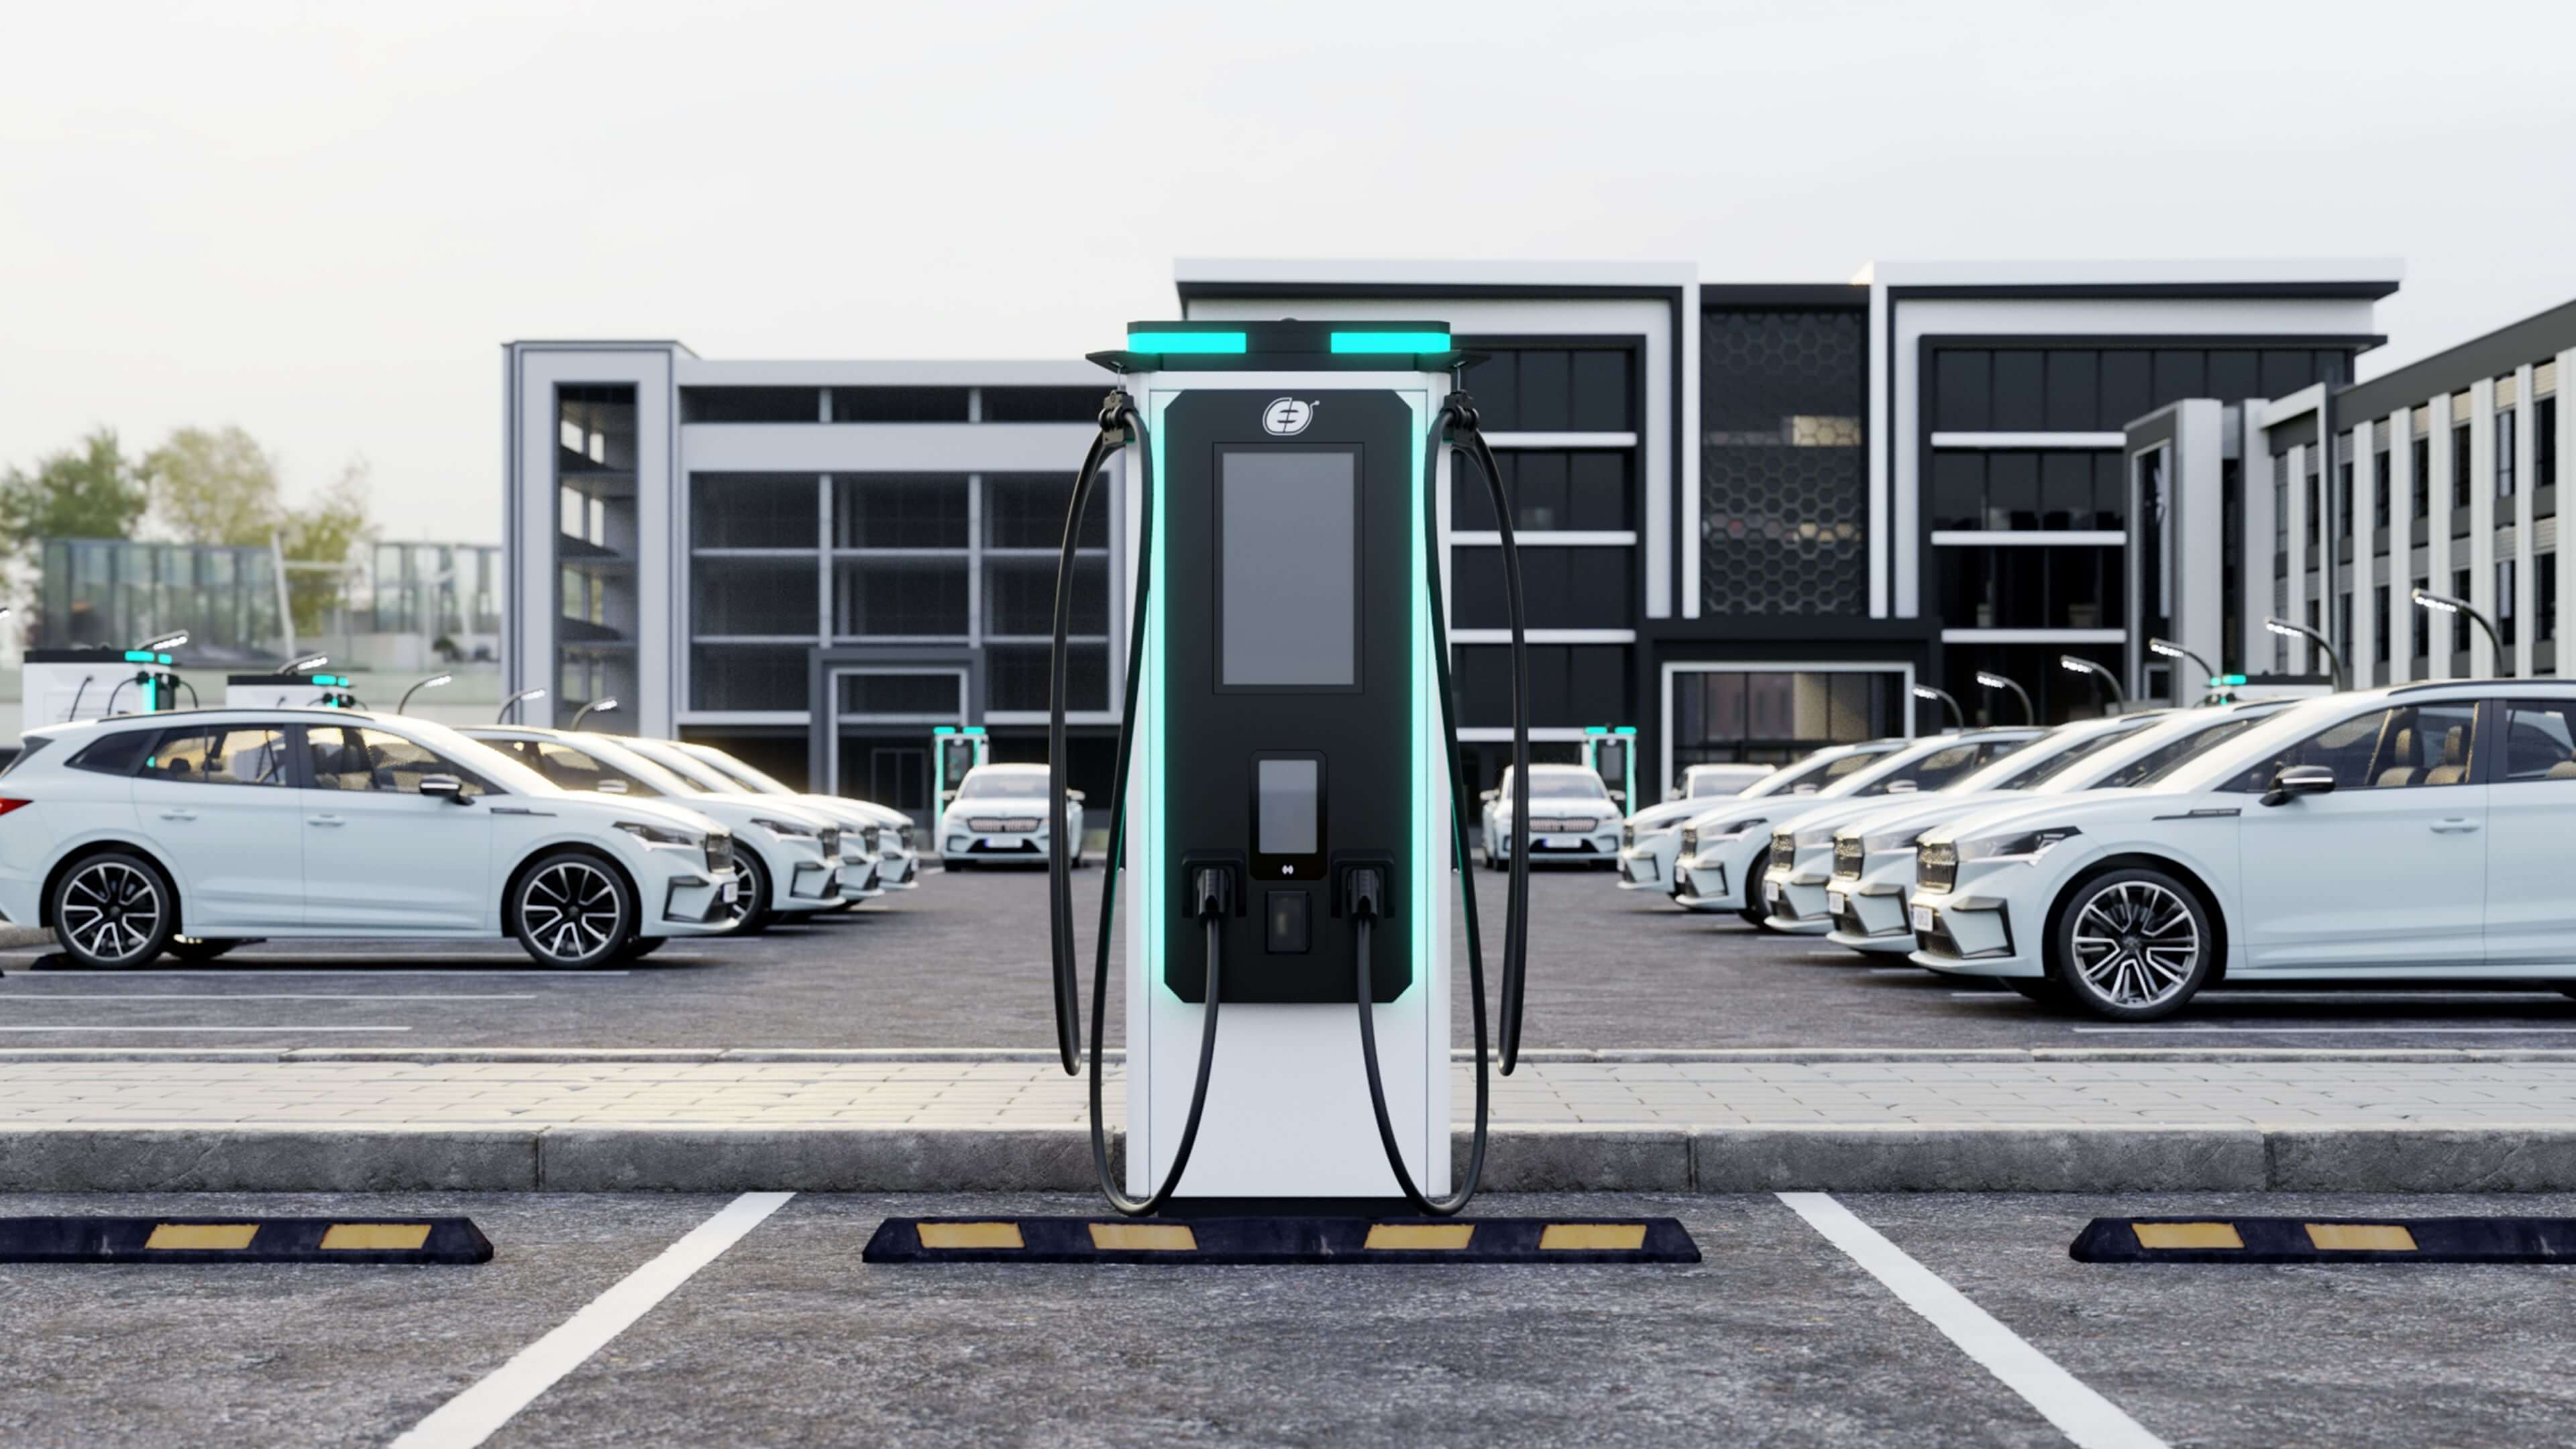 Ekoenergetyka - Ekoenergetyka -  fast charging stations, electric car charging stations, charge point, ev charger, electric bus charging